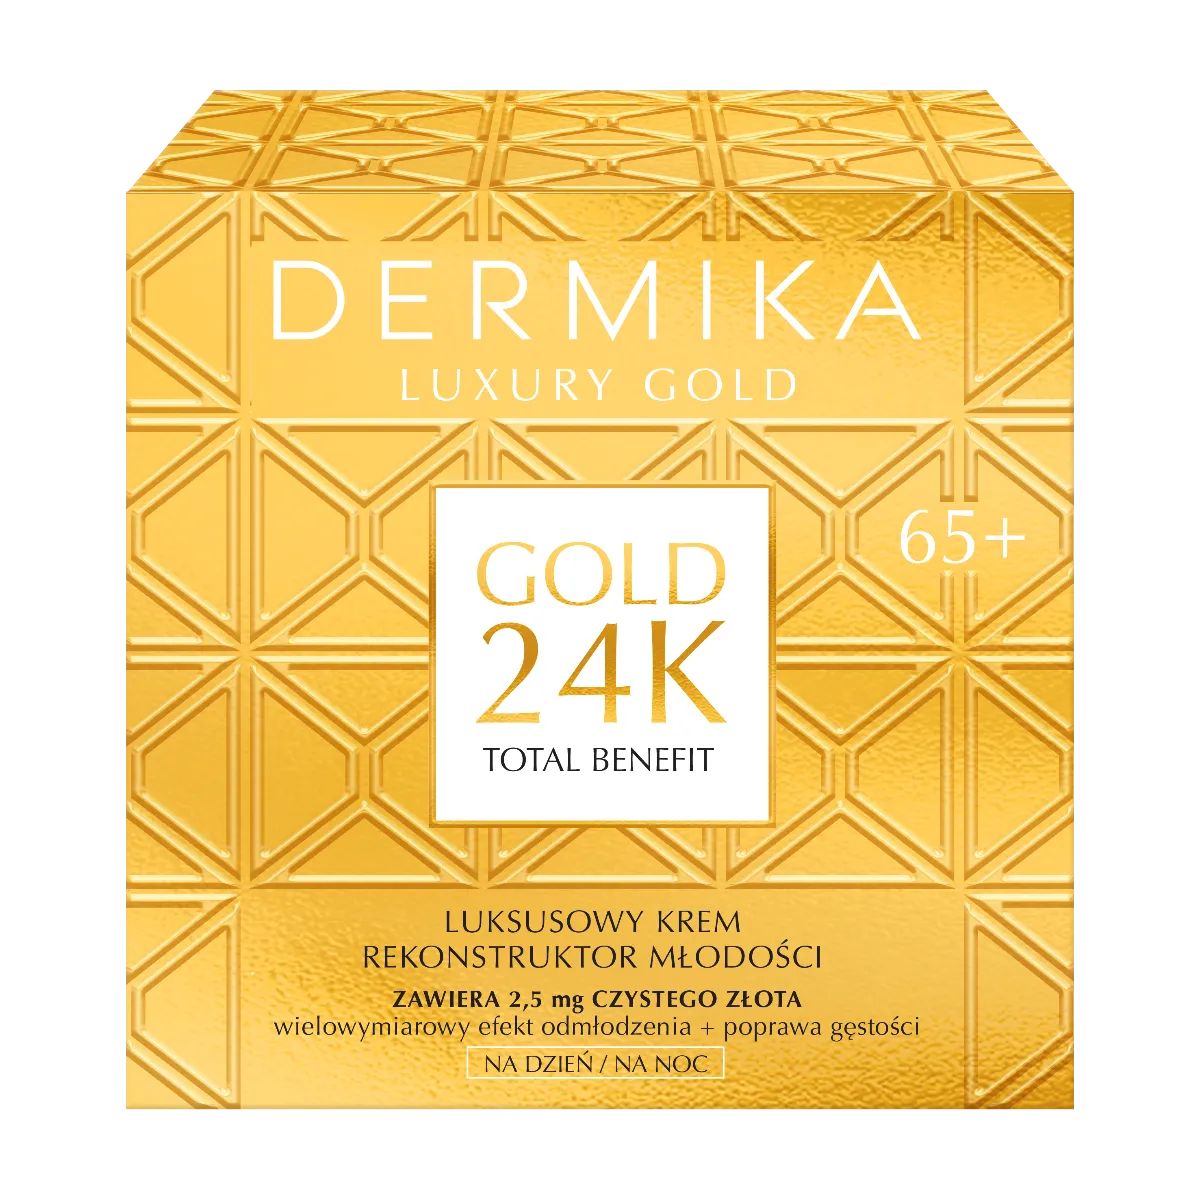 Dermika Luxury Gold 24k 65+, krem na dzień i noc, 50 ml